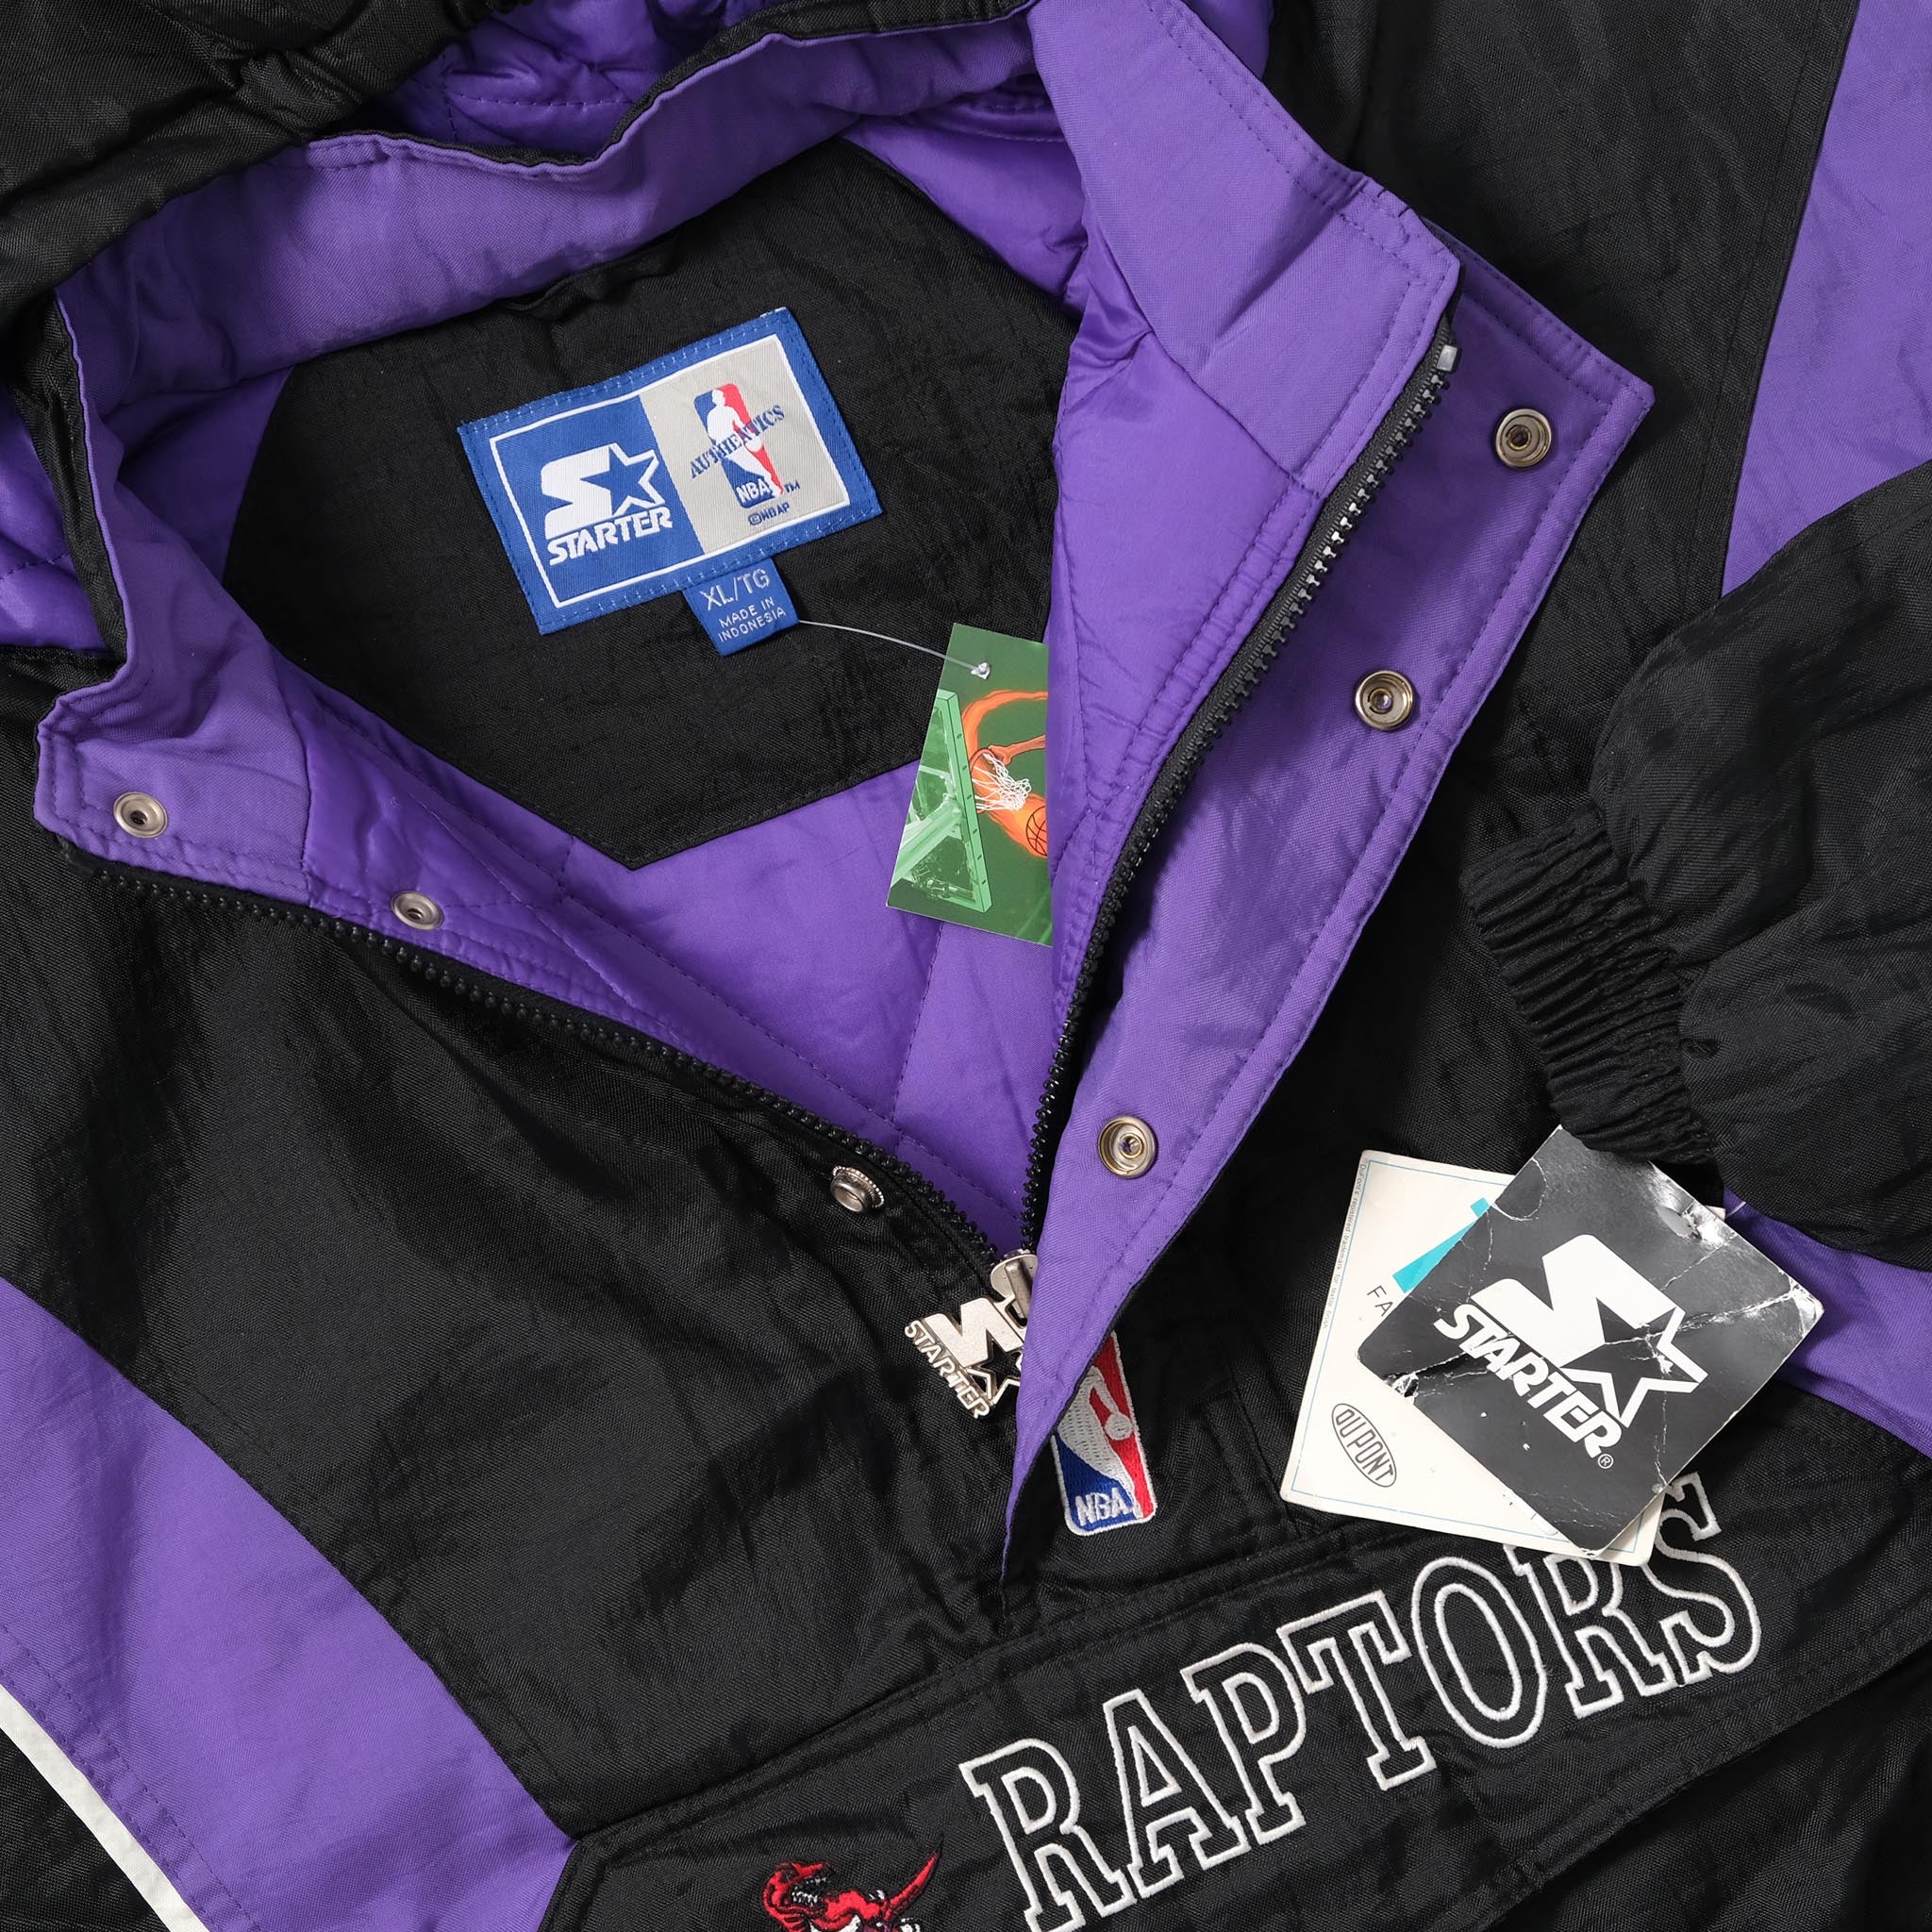 Toronto Raptors Starter Jackets , Raptors Pullover Starter Jacket,  Throwback 90's Jackets